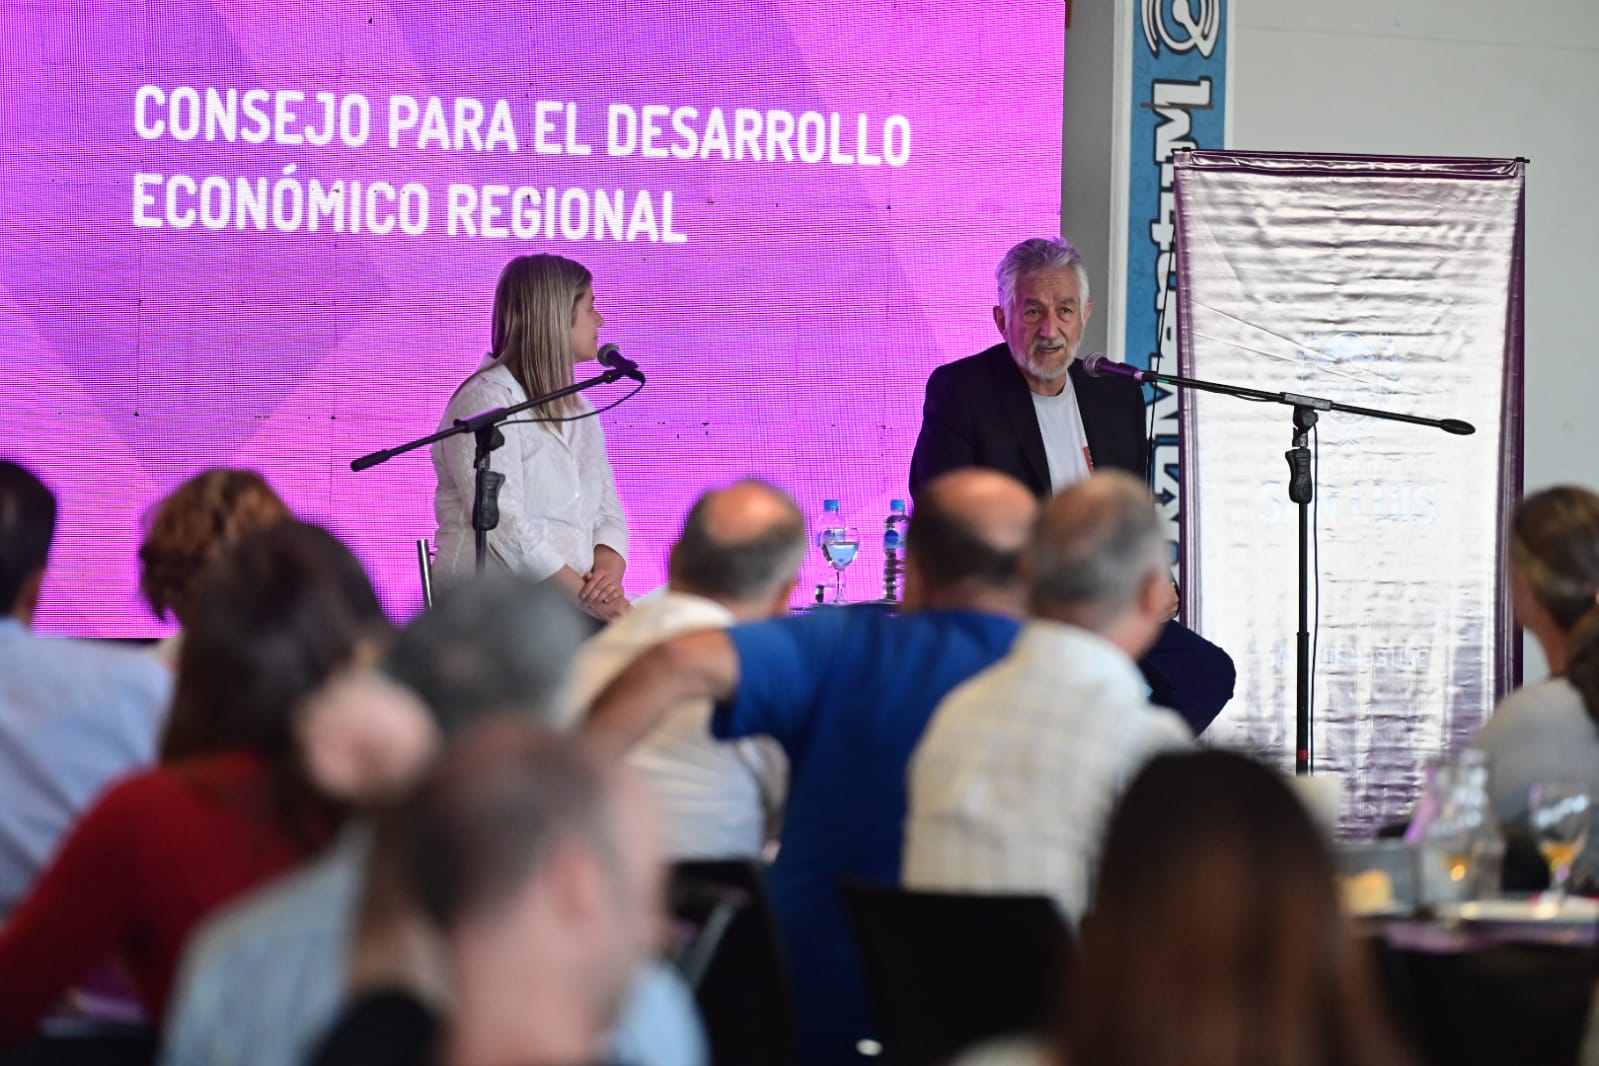 Alberto Rodríguez Saá en Pedernera: “Estas reuniones nos permiten dialogar y trabajar unidos”